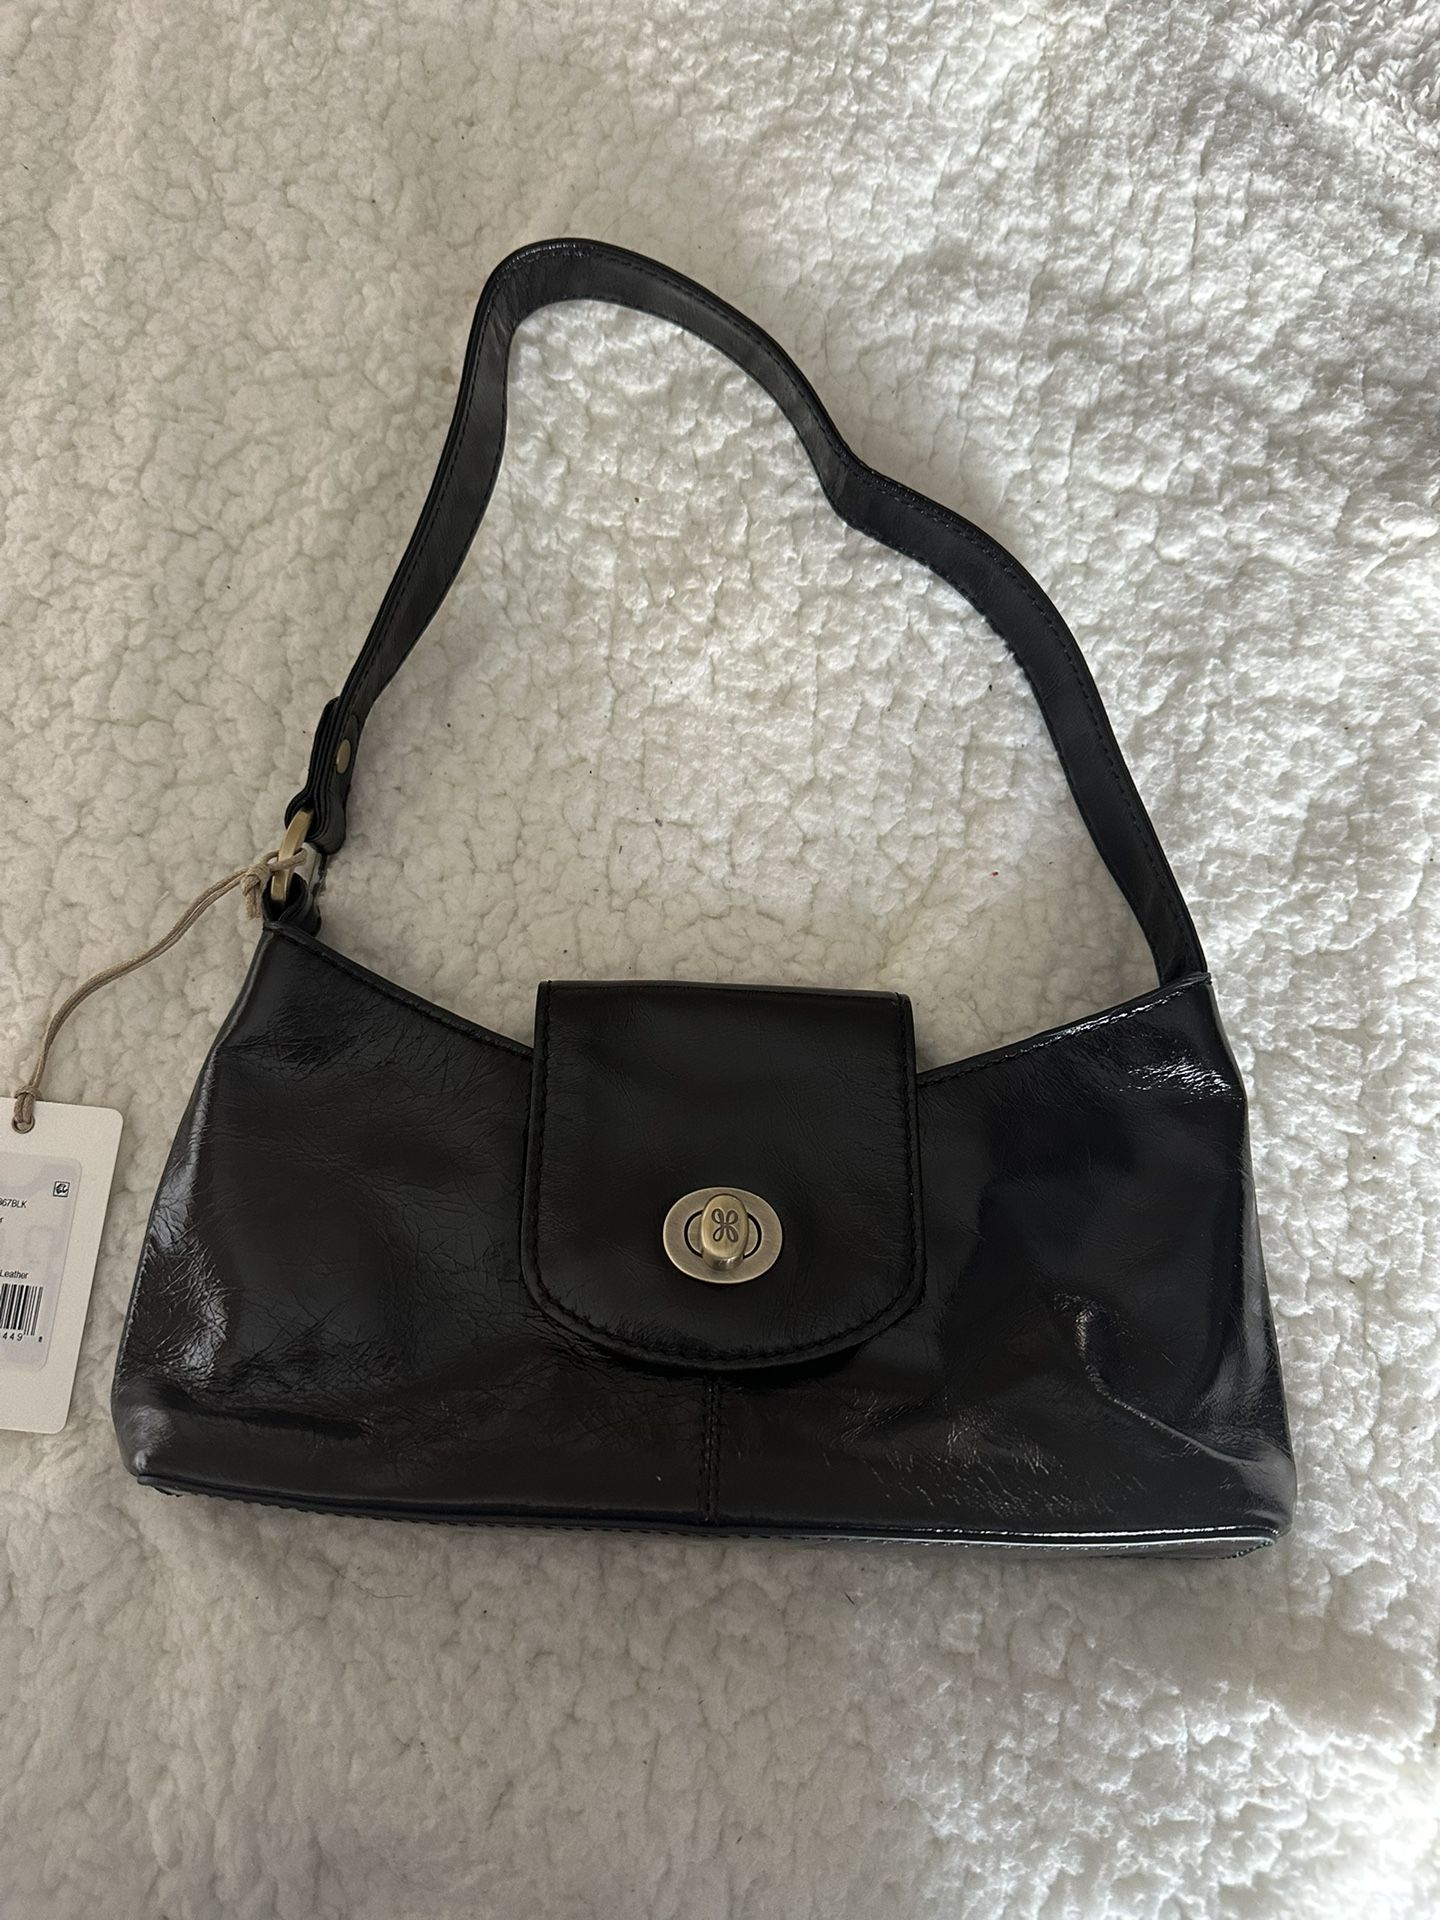 Hobo Leather Handbag, Black, New with tag 